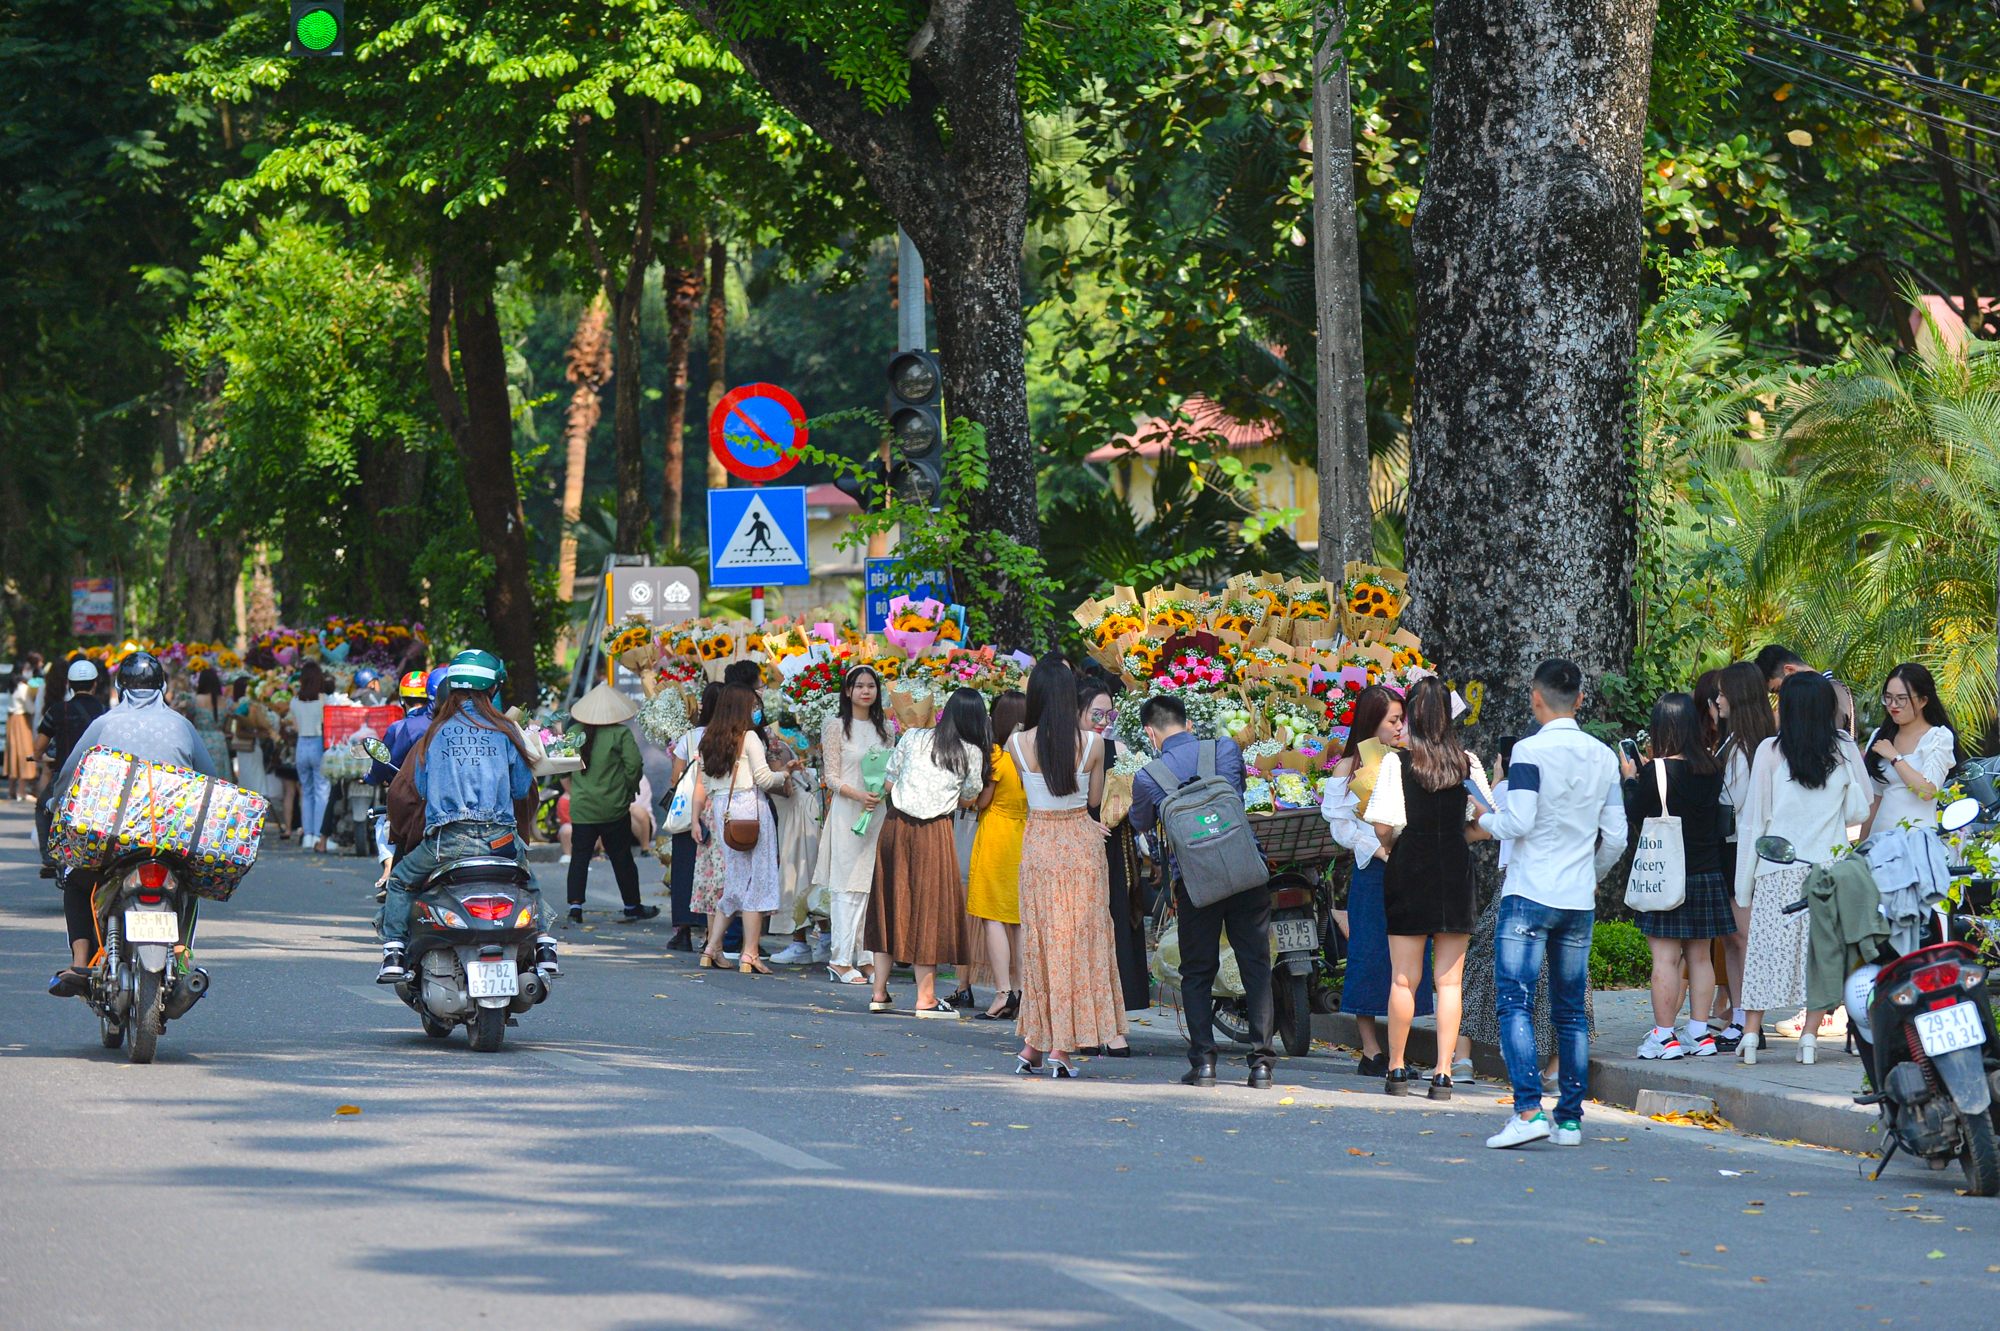 Tai nạn giao thông là một chủ đề nghiêm túc và cũng là một vấn đề đang được nhiều người quan tâm tại Việt Nam. Với những tấm ảnh rõ ràng và chân thật về tình trạng giao thông hiện nay, chúng tôi hy vọng sẽ giúp bạn nhận ra tầm quan trọng và cần thiết của việc giảm thiểu tai nạn giao thông một cách đáng kể.